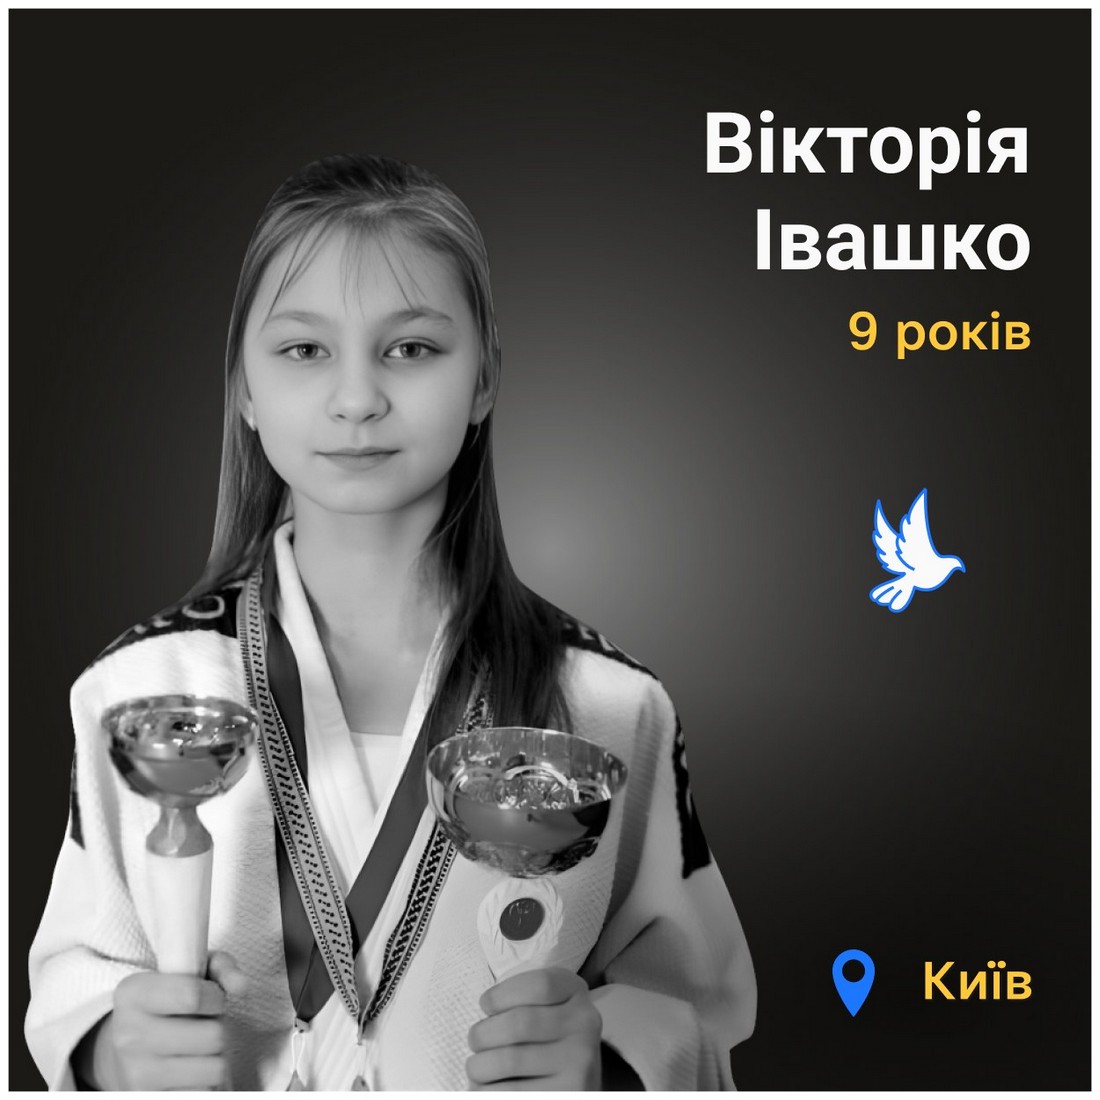 Меморіал: вбиті росією. Вікторія Івашко, 9 років, Київ, червень